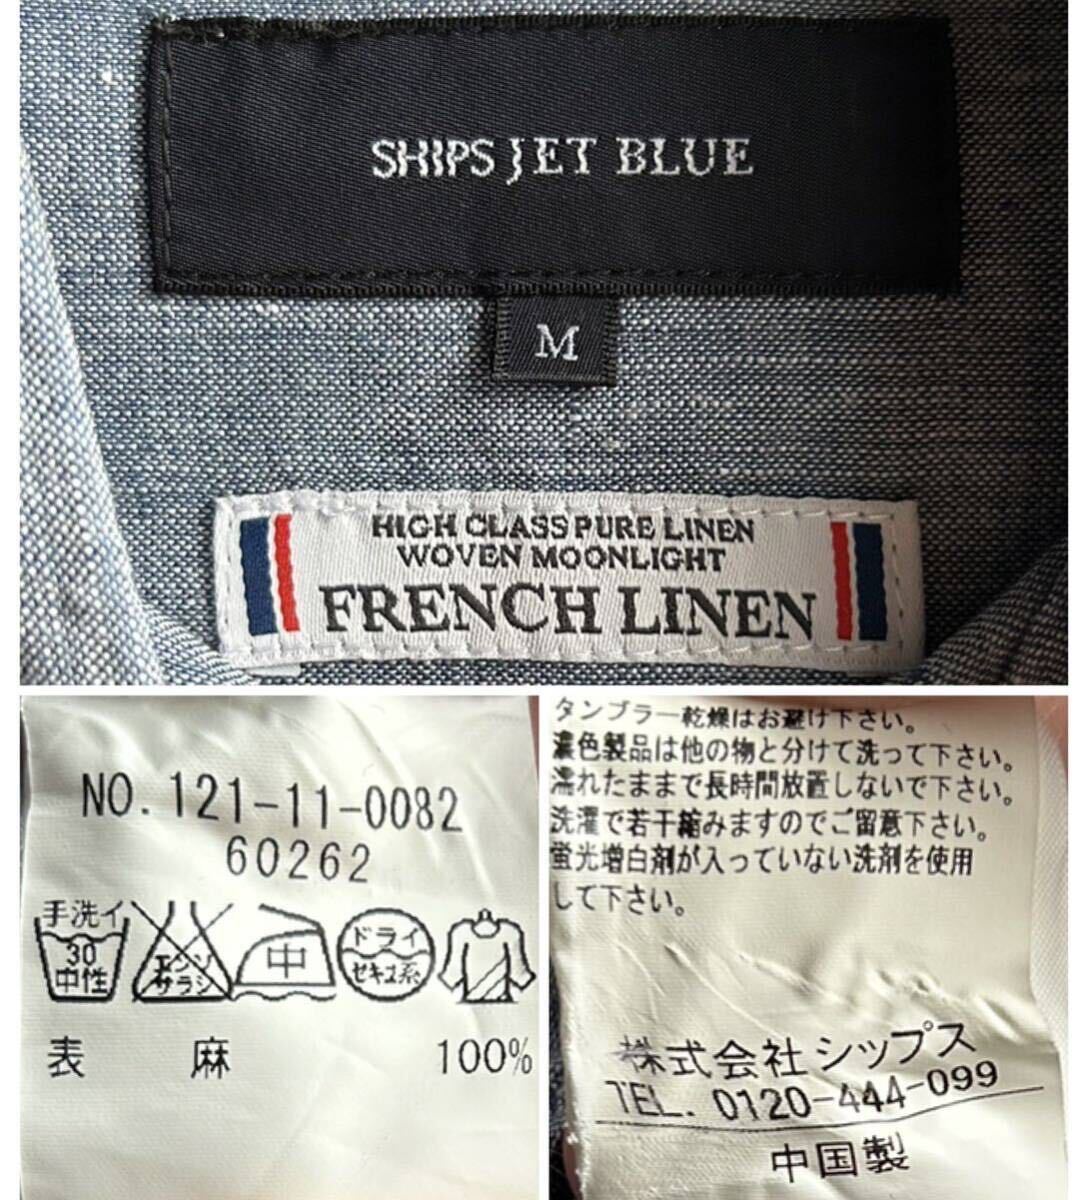 【美品】SHIPS JET BLUE シャツ リネンシャツ メンズ M ネイビー 紺 フレンチリネン100% シップス ジェット ブルー